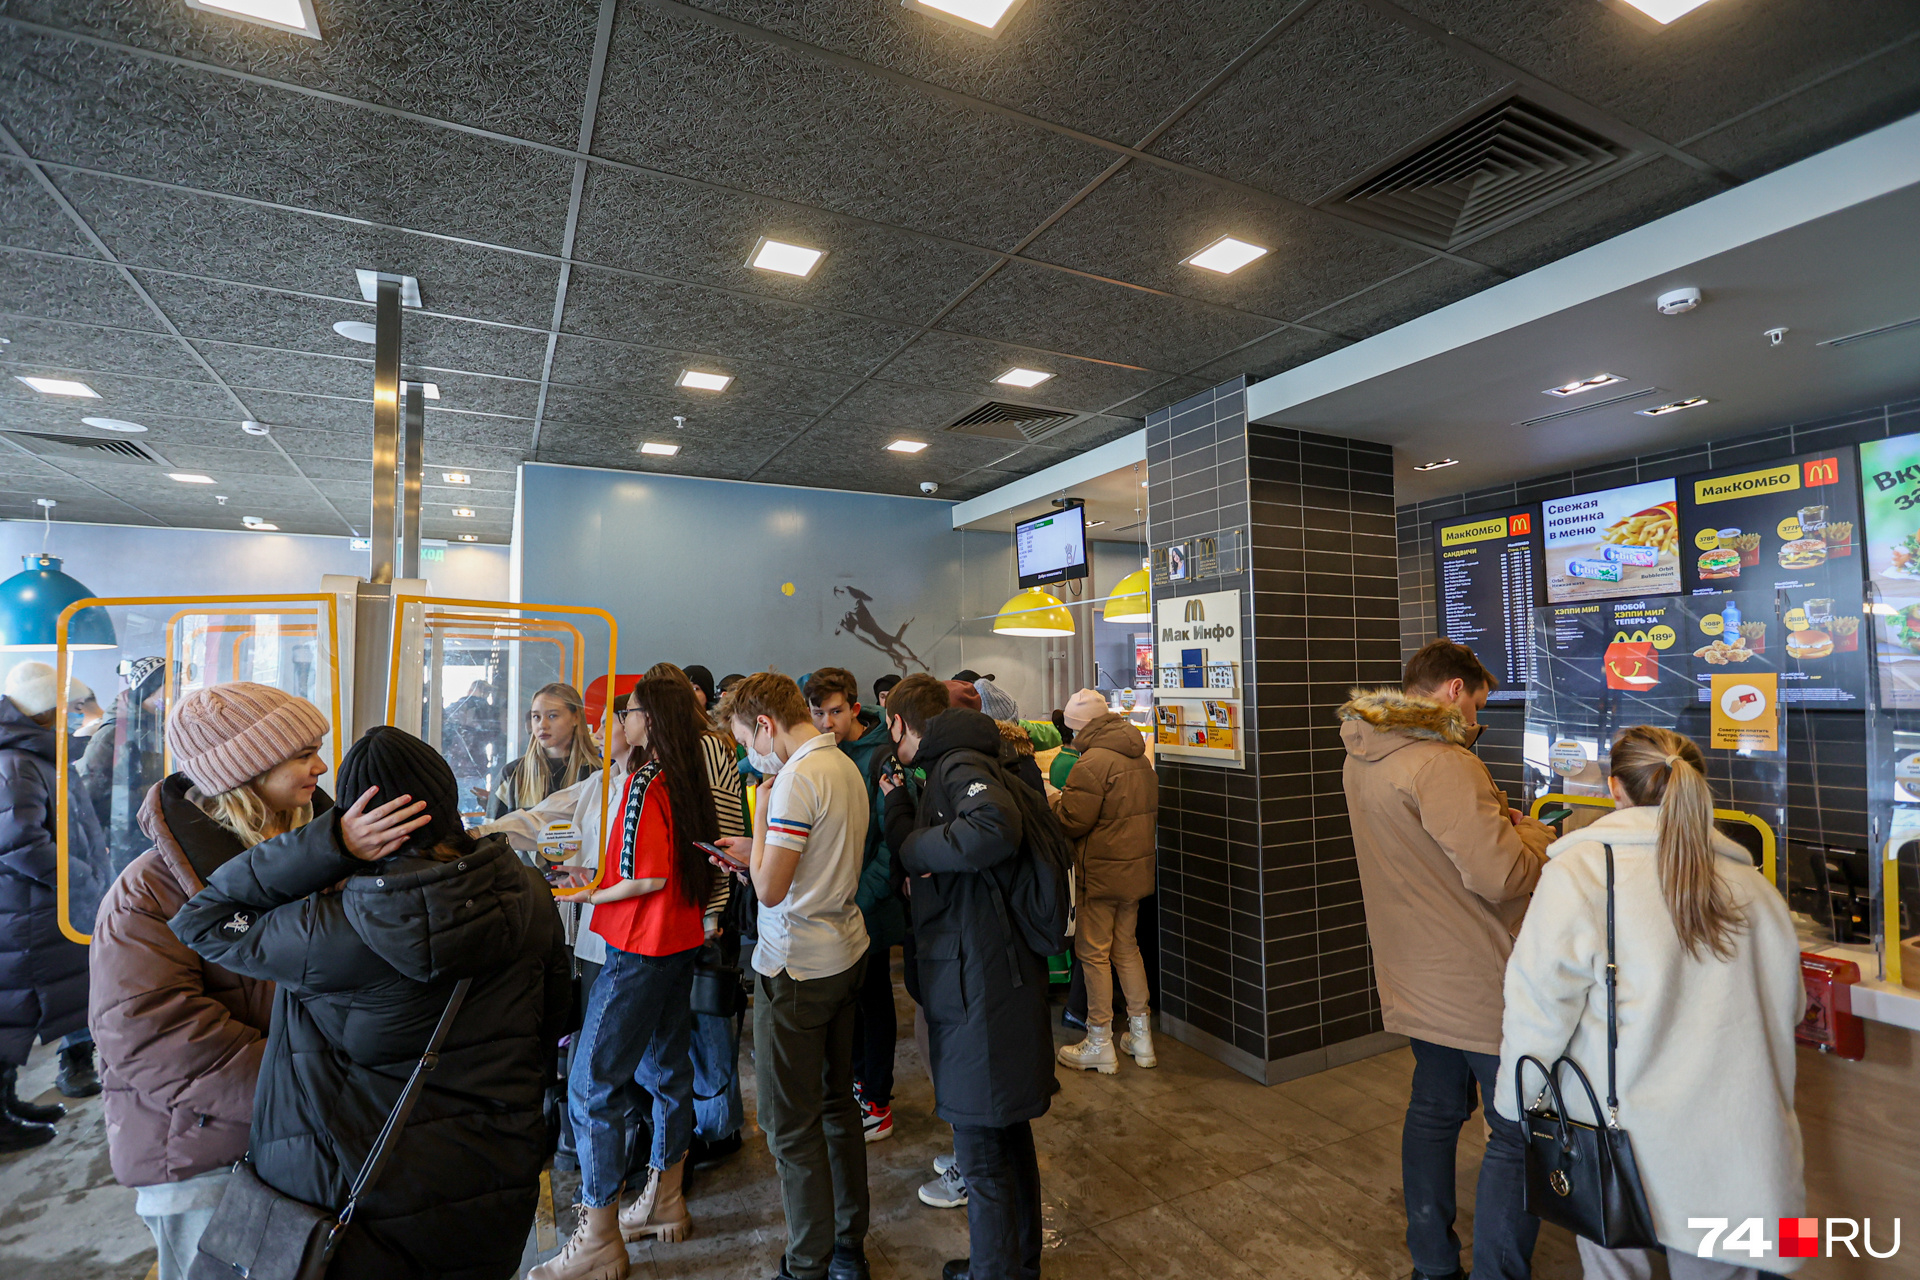 А это McDonald’s. Там сегодня были такие очереди, сеть заявила, что <a href="https://74.ru/text/economics/2022/03/09/70494710/" class="_ io-leave-page" target="_blank">прекращает свою работу с 14 марта</a>